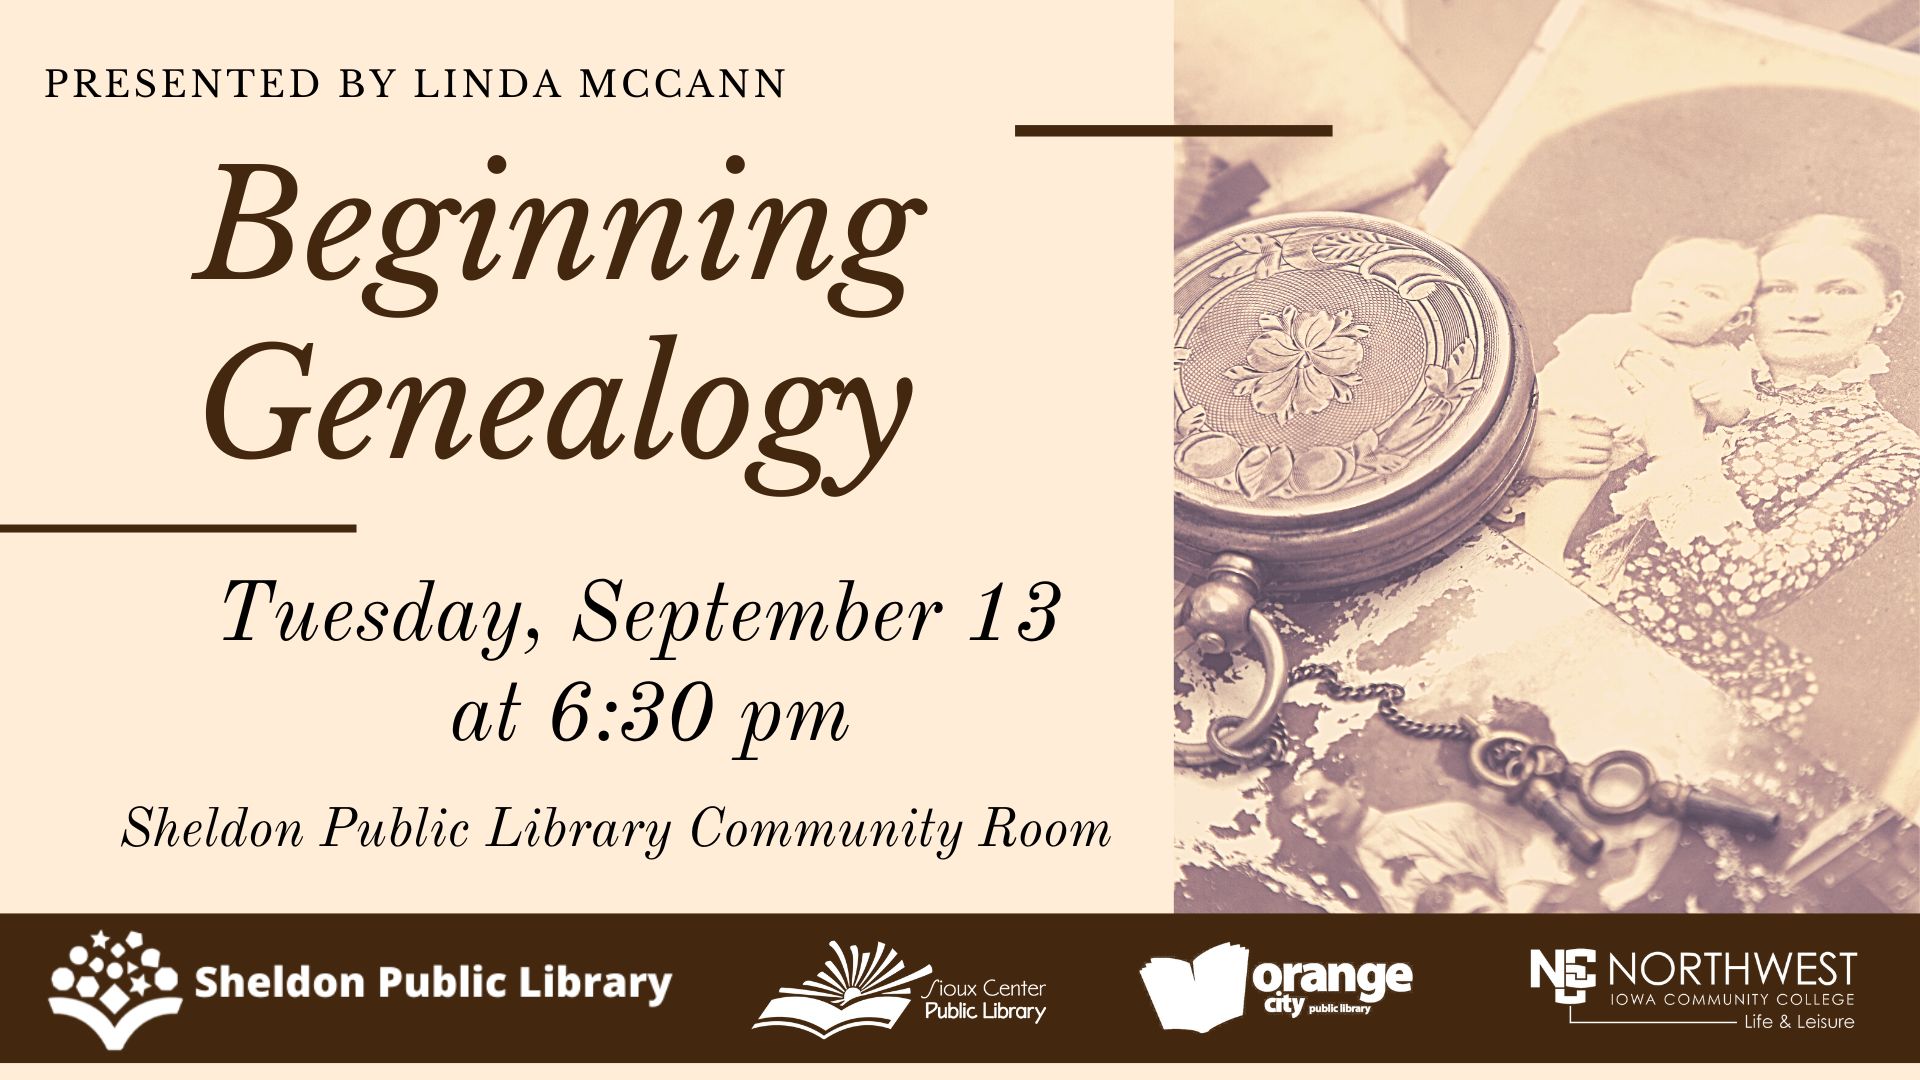 Beginning Genealogy - Linda McCann